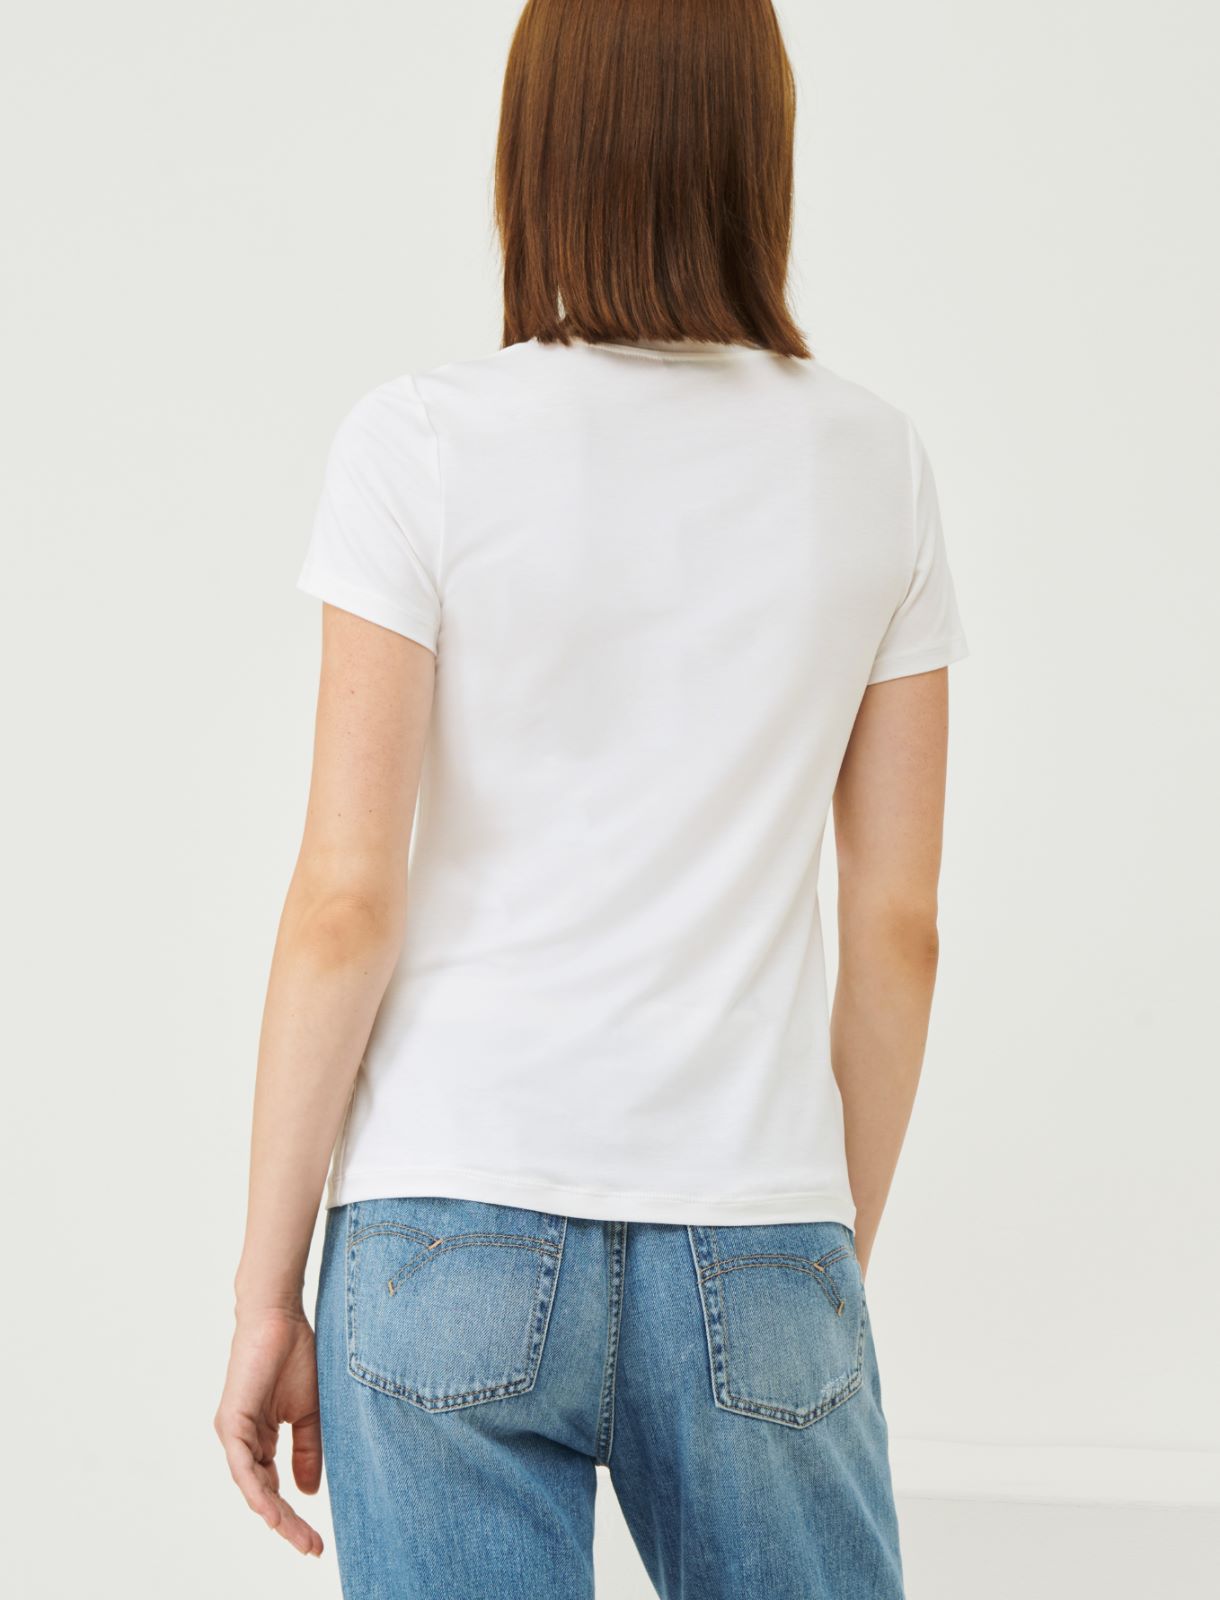 Jersey T-shirt - White - Marina Rinaldi - 2